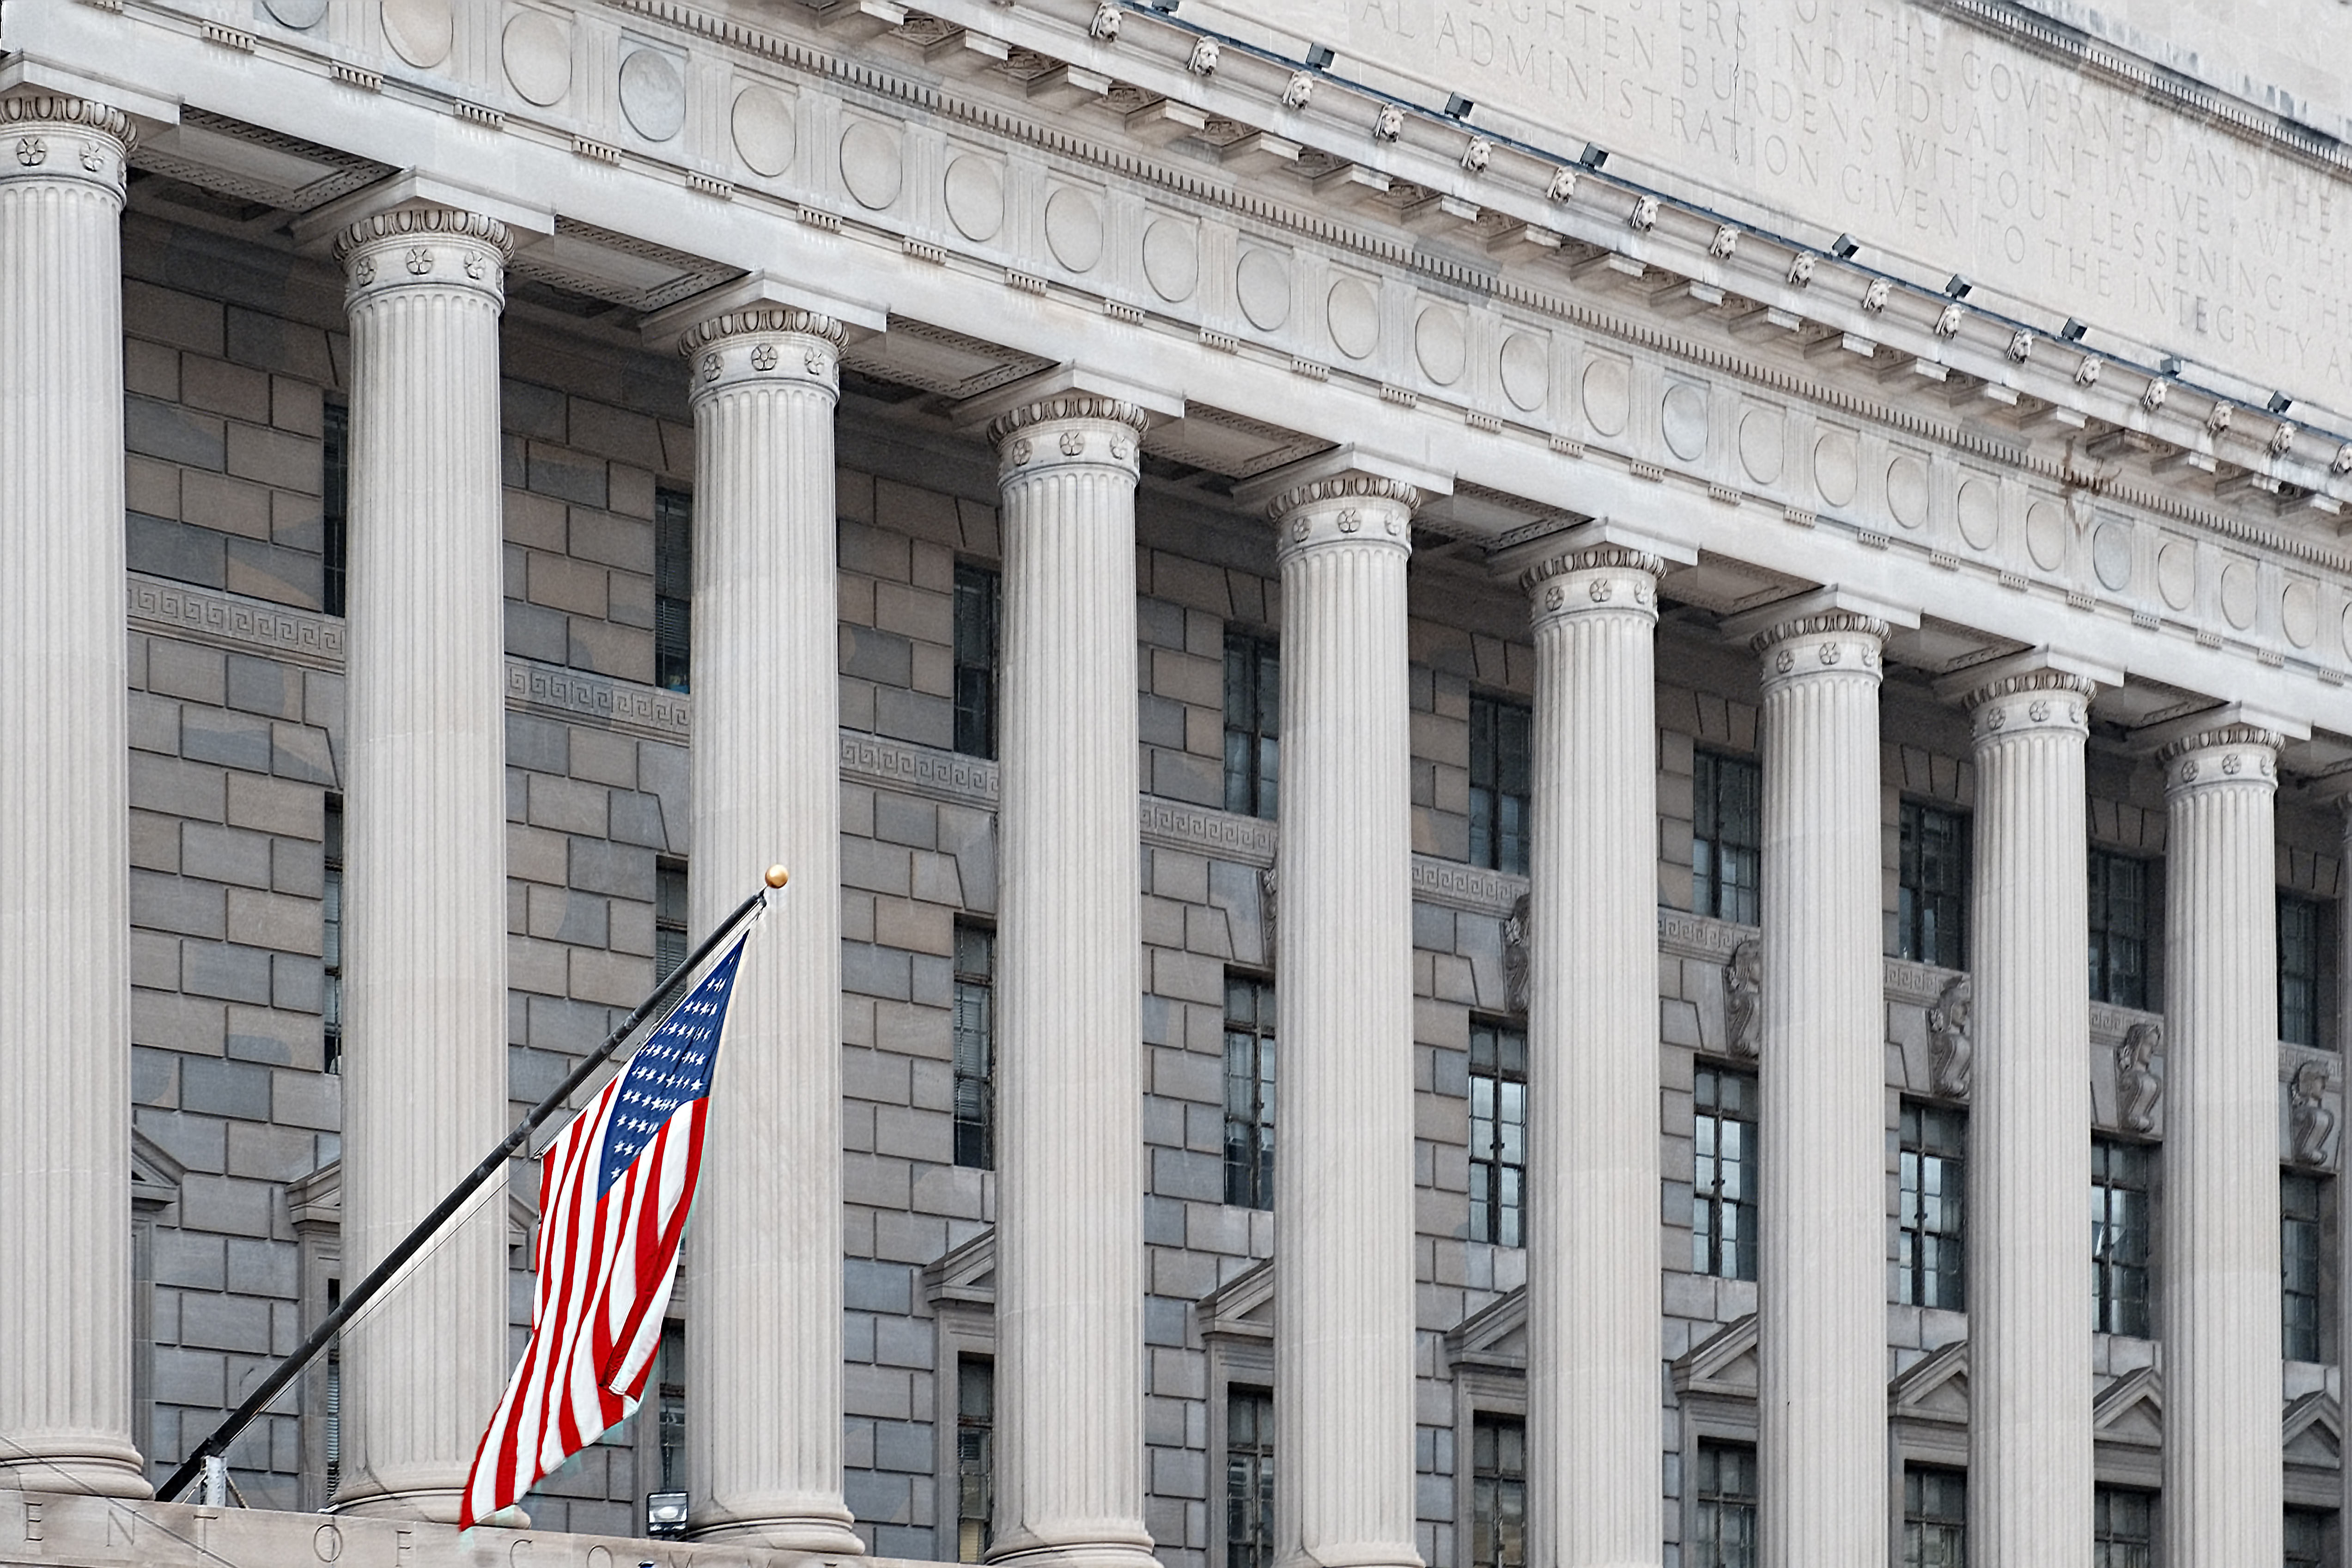 Die US-Flagge vor dem Hintergrund eines Gebäudes mit Säulen | Quelle: Shutterstock